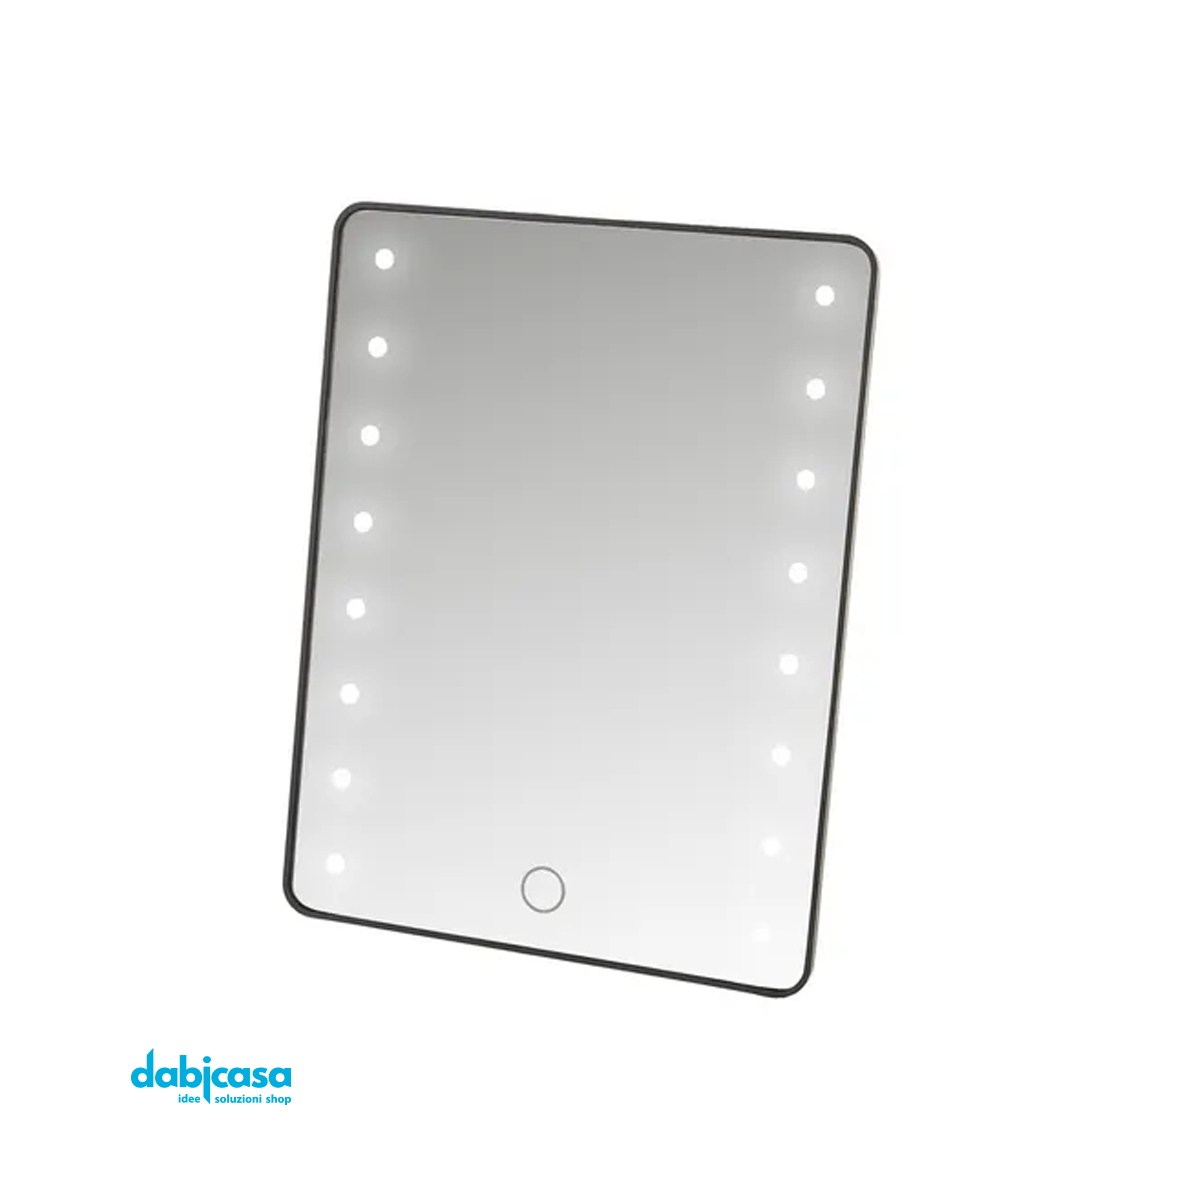 Specchio con Luce Led in Polistirolo Colore Nero 17 X 2,50 X 22 CM freeshipping - Dabicasa